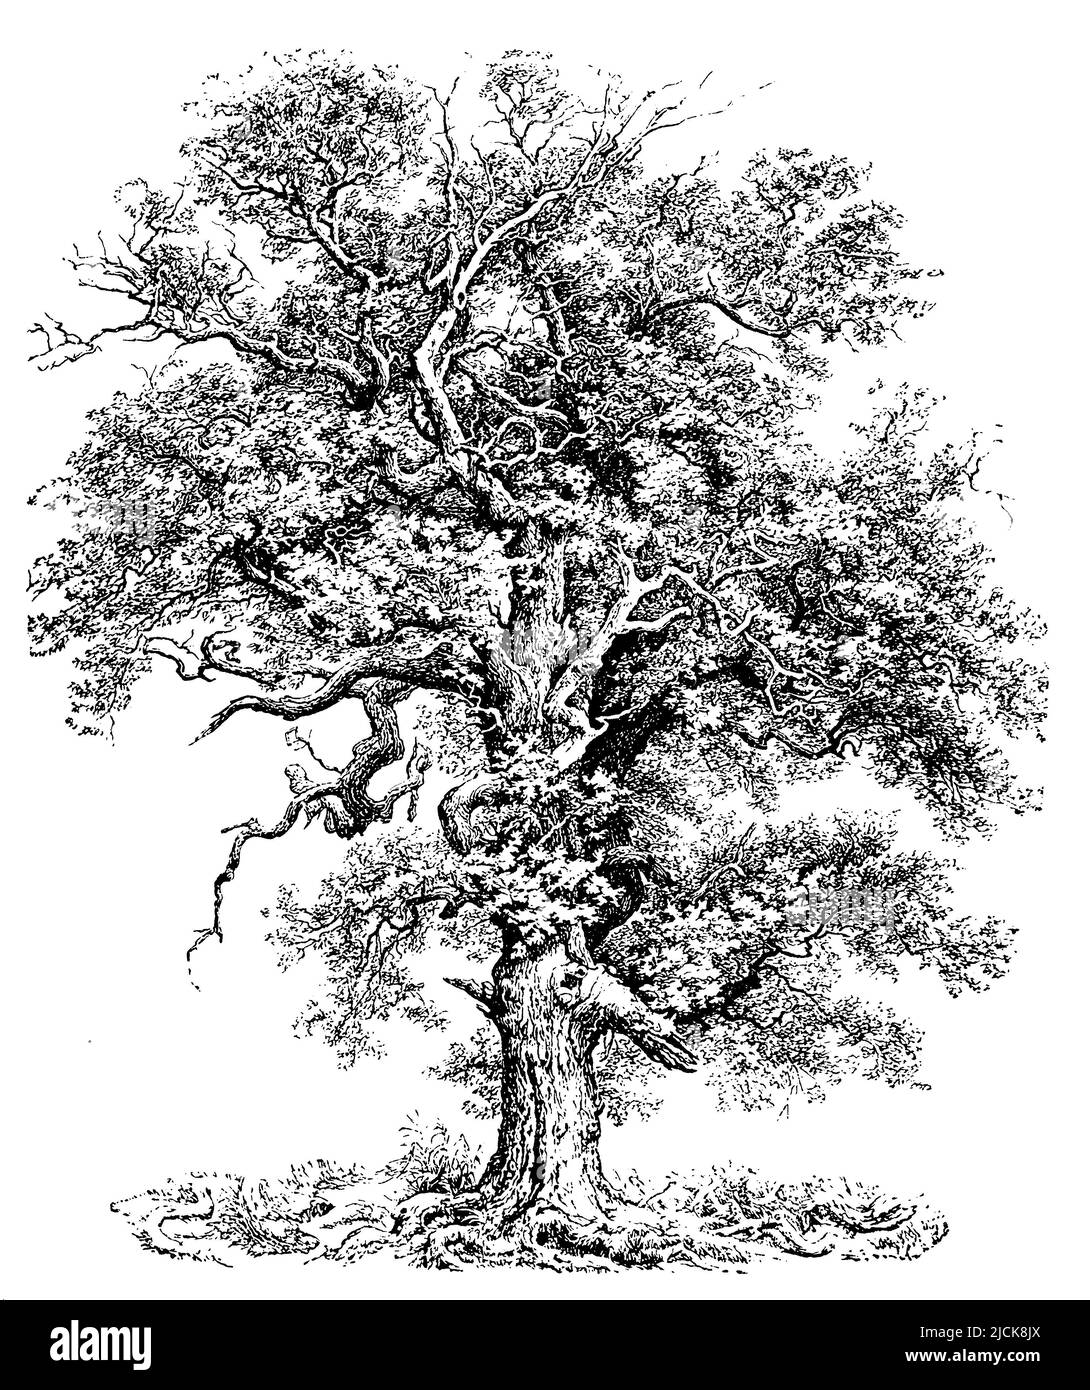 Chêne français, Quercus robur, (encyclopédie, 1898), Stieleiche, chêne pédonculé Banque D'Images